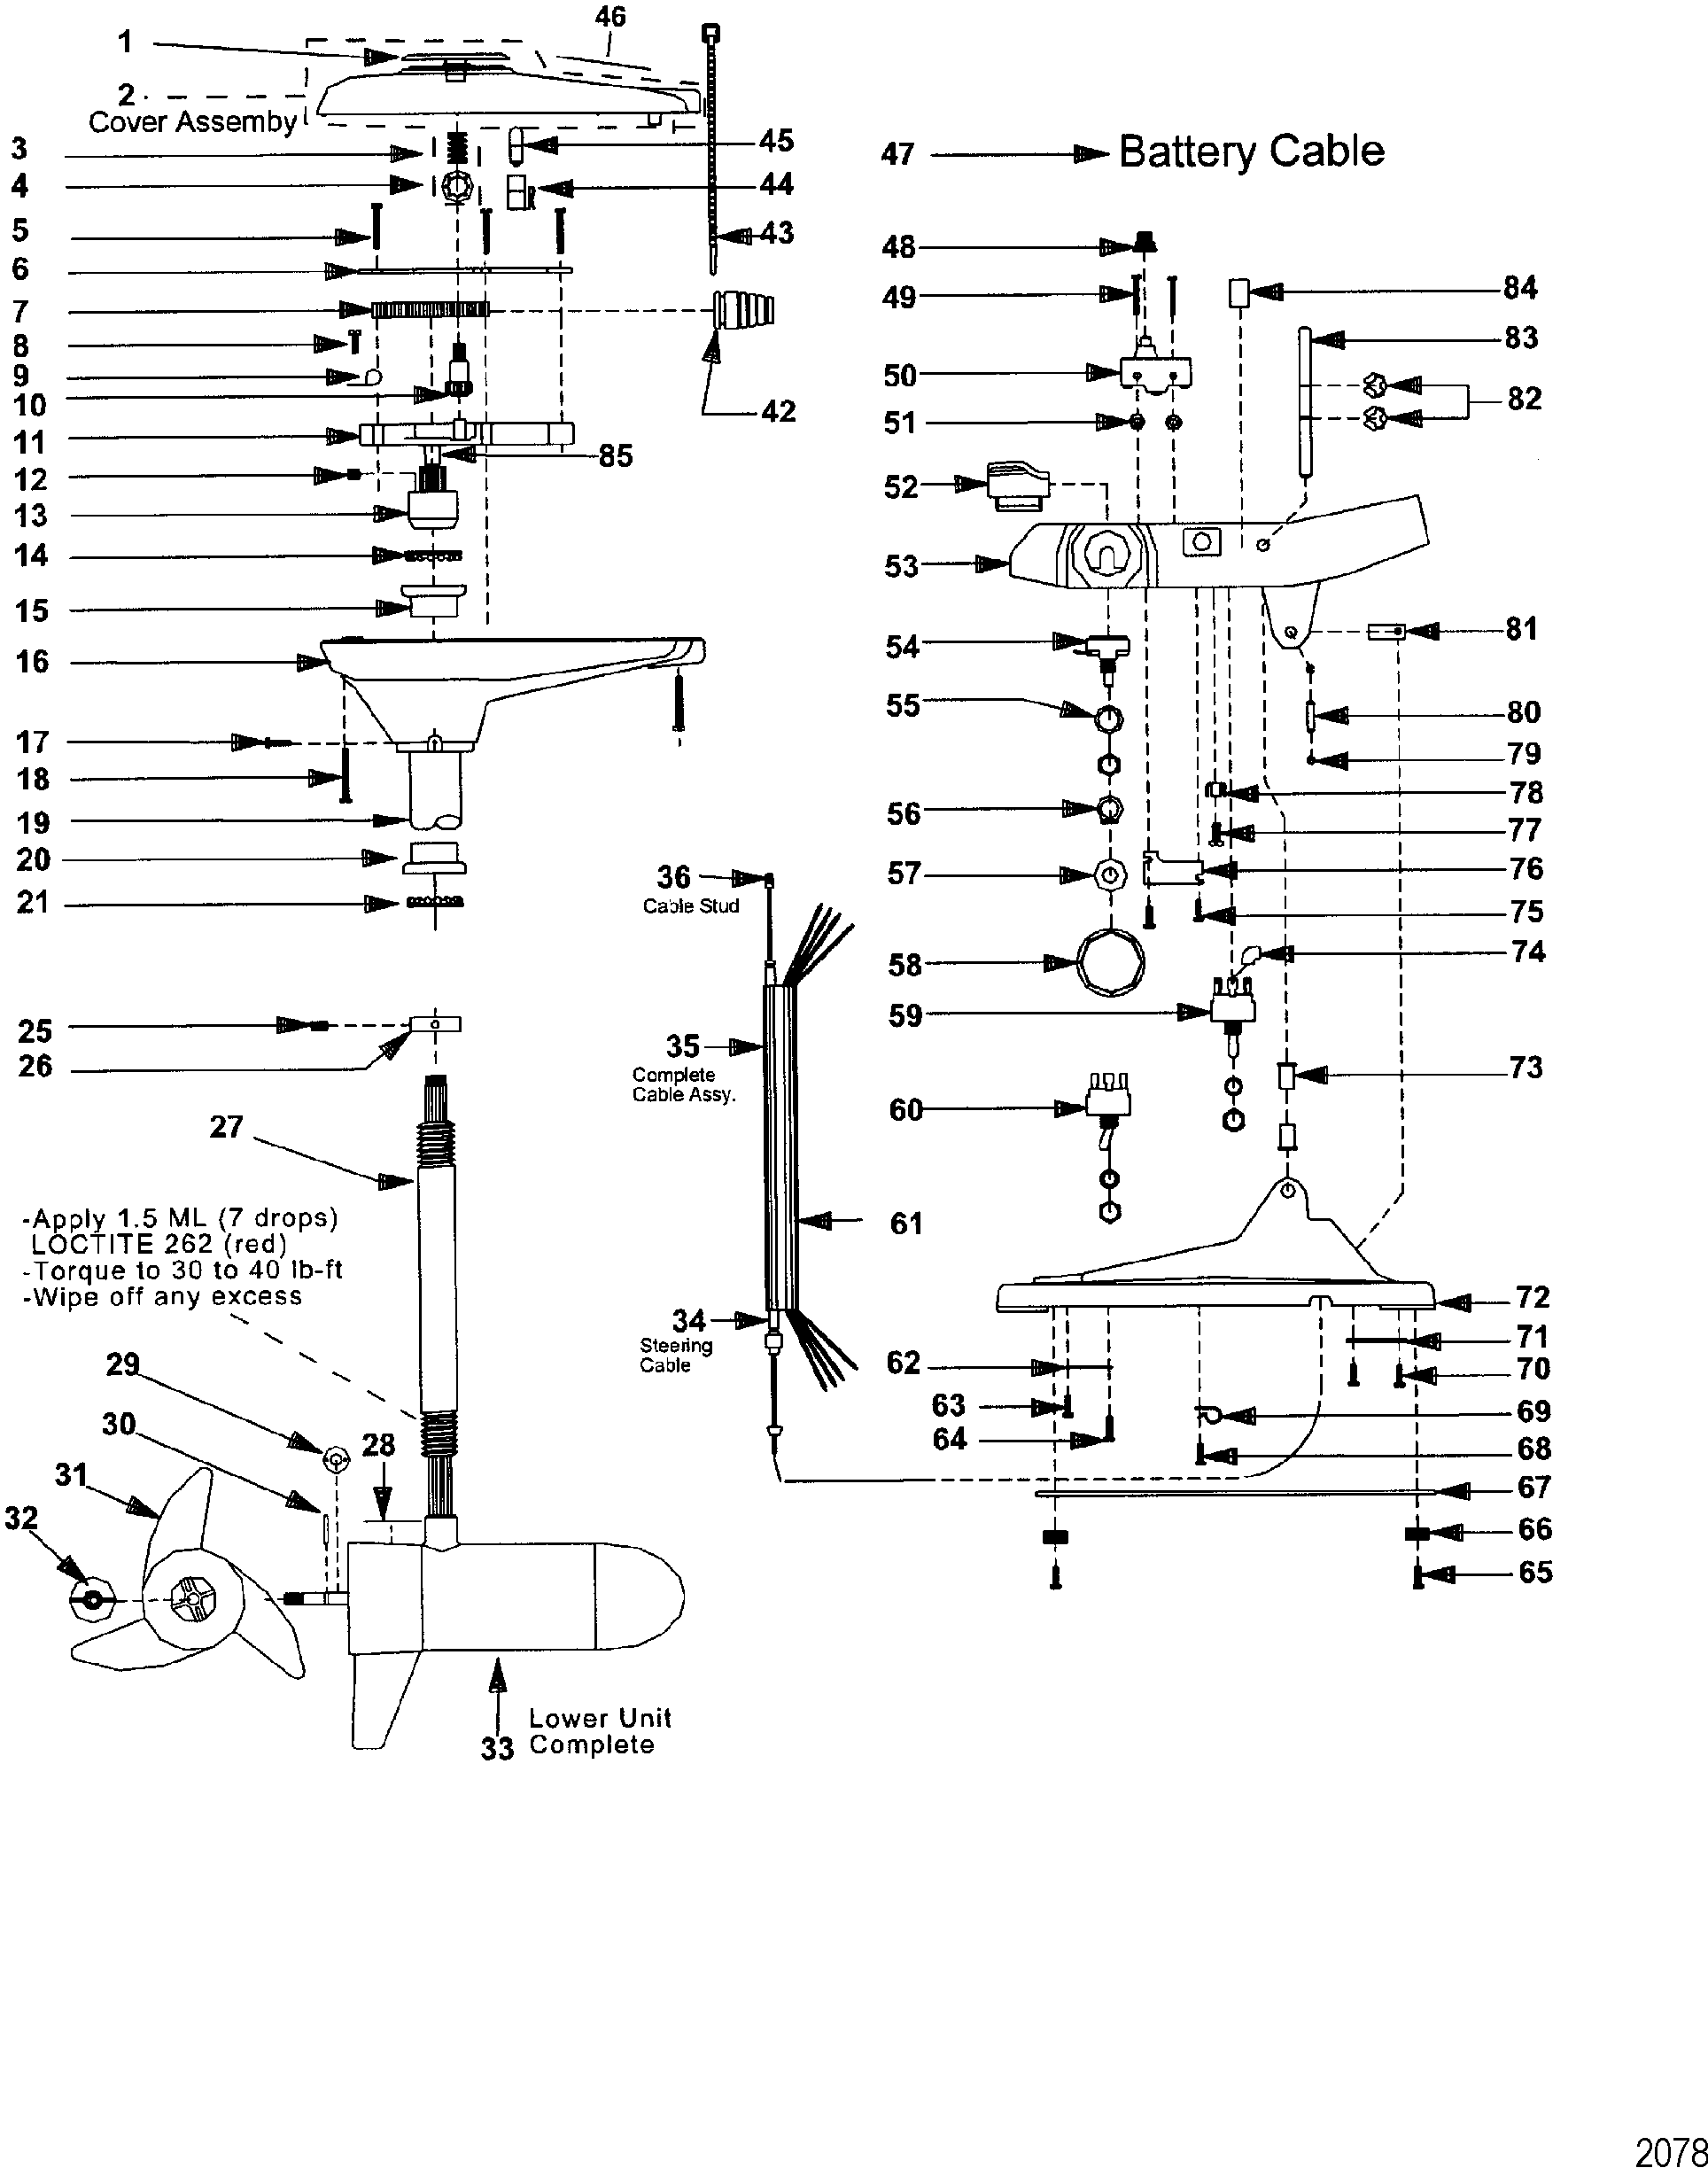 Wiring Diagram For 24v Trolling Motor